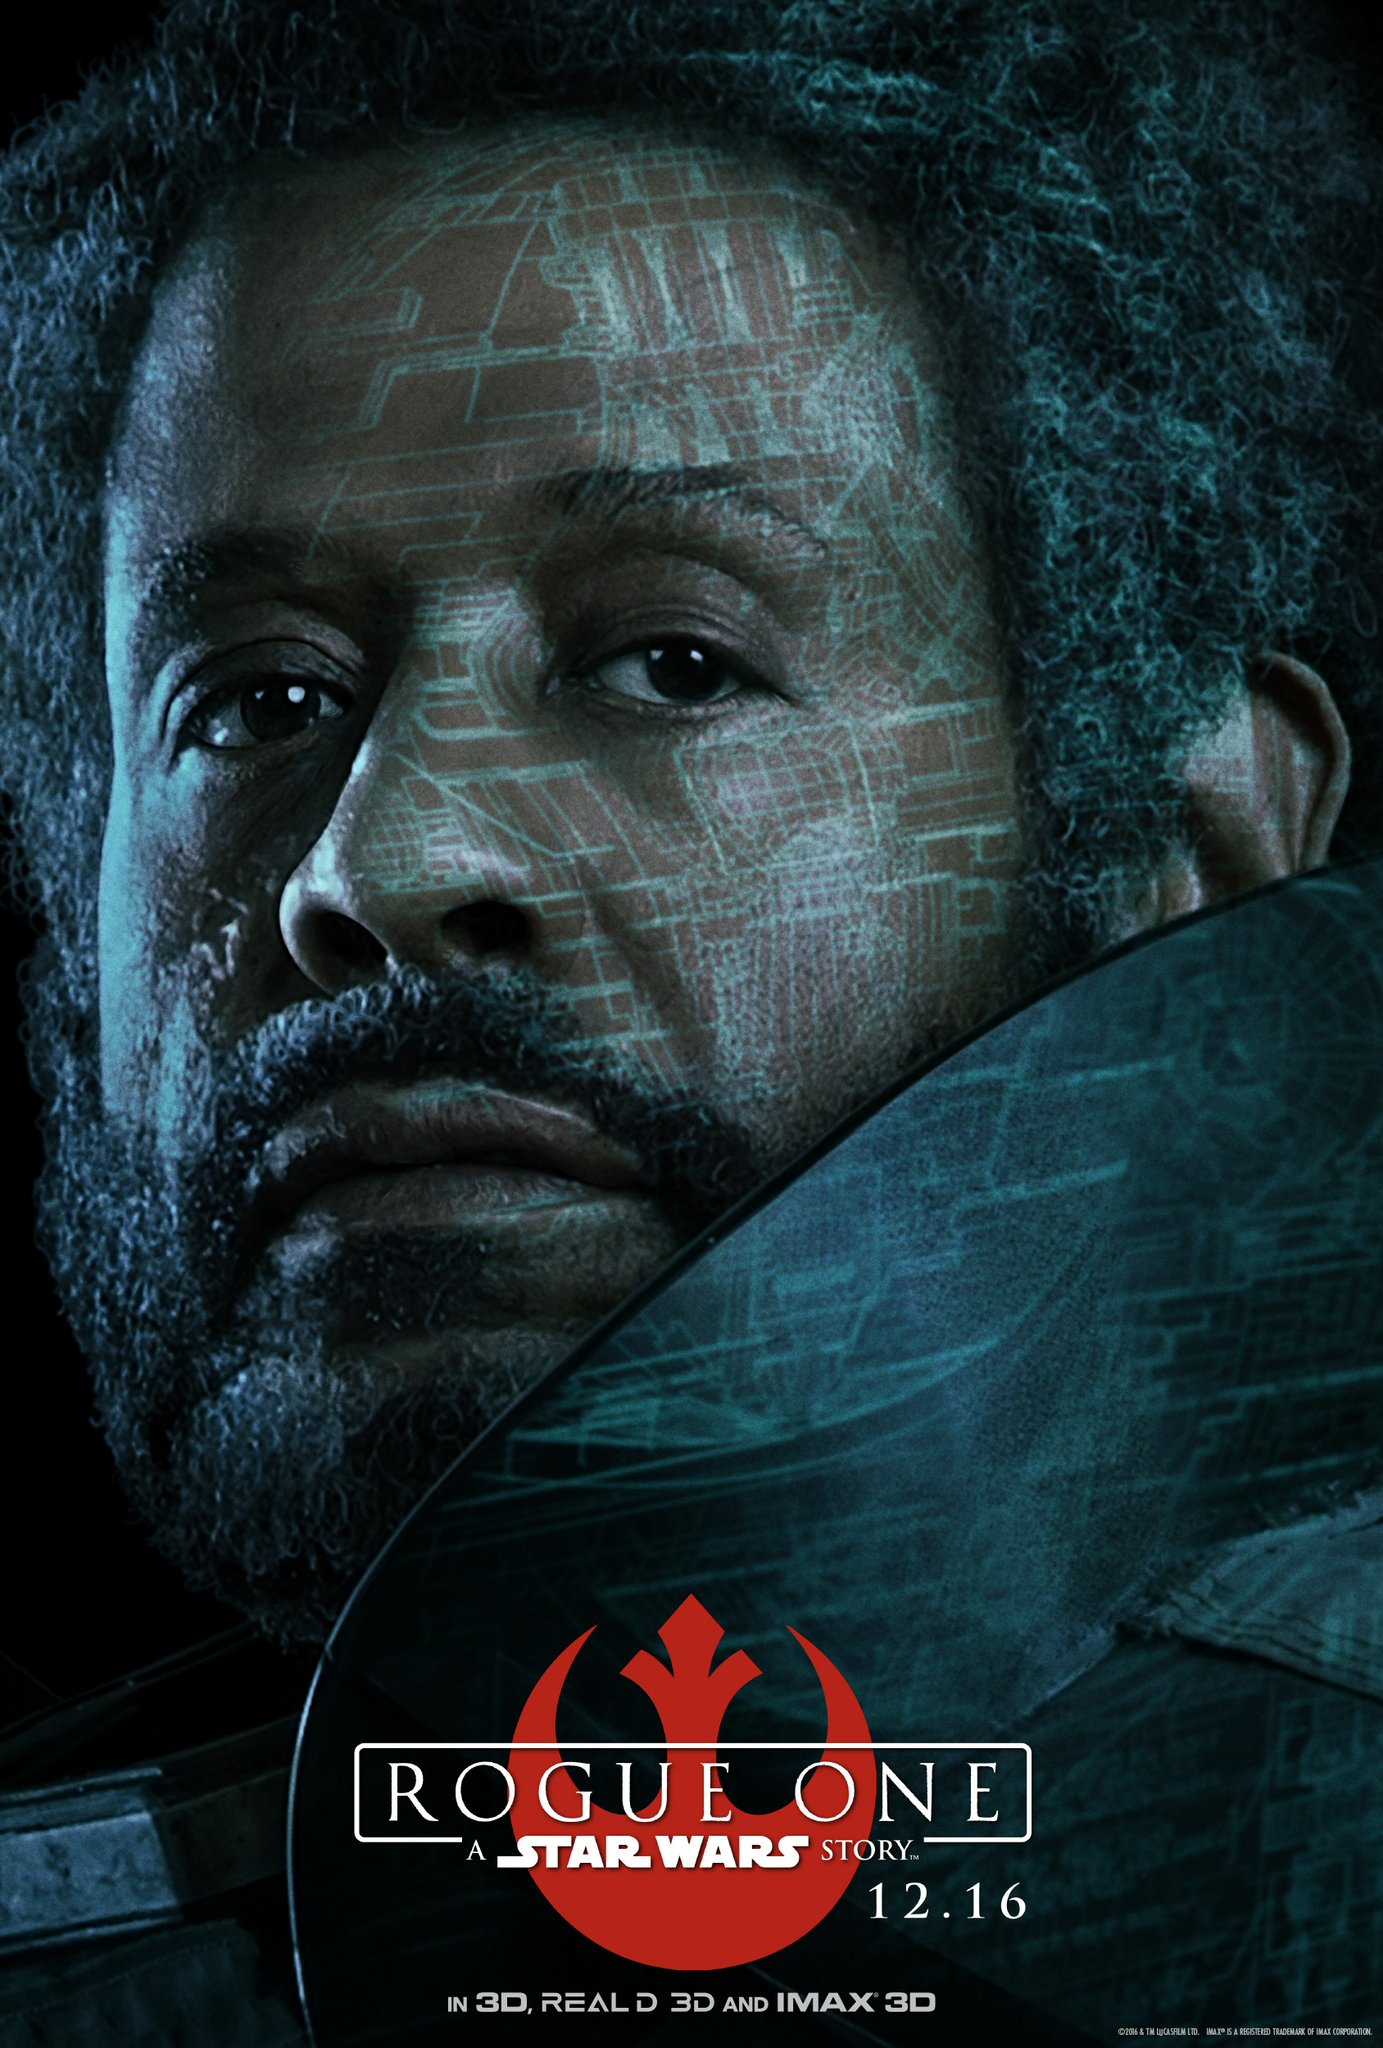 Saw Gerrera (Forest Whitaker) élő legenda, a galaxis legkeresettebb terroristáinak egyike. A klónháború idején partizánként harcolt a Köztársaság oldalán. Most a Birodalom ellen vív ádáz háborút.